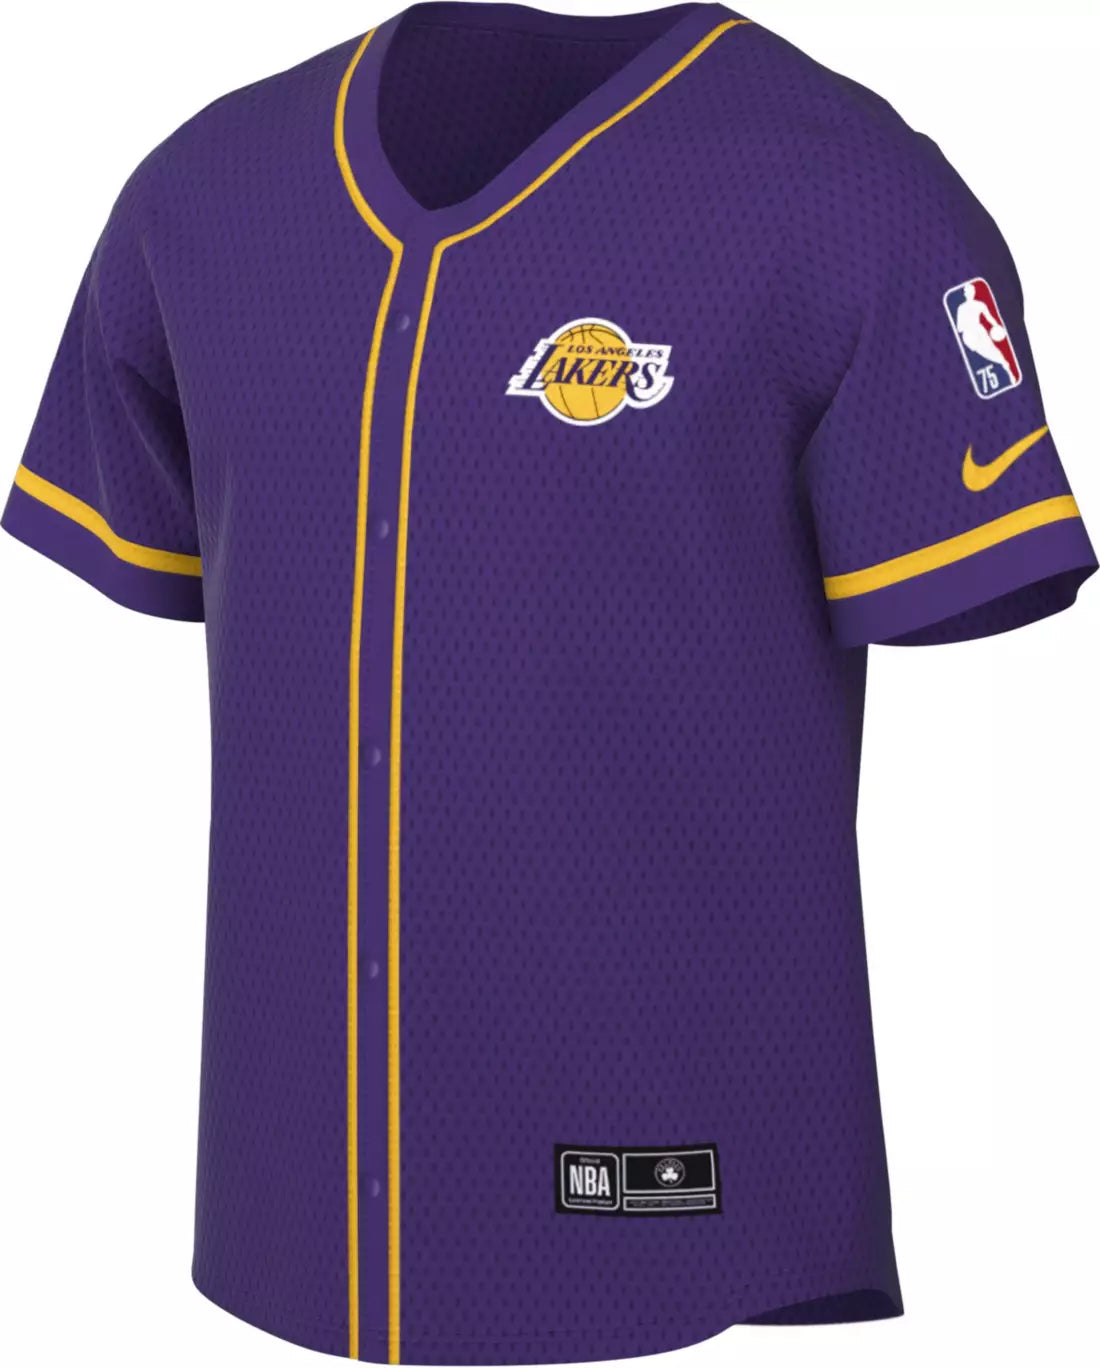 la lakers jersey purple